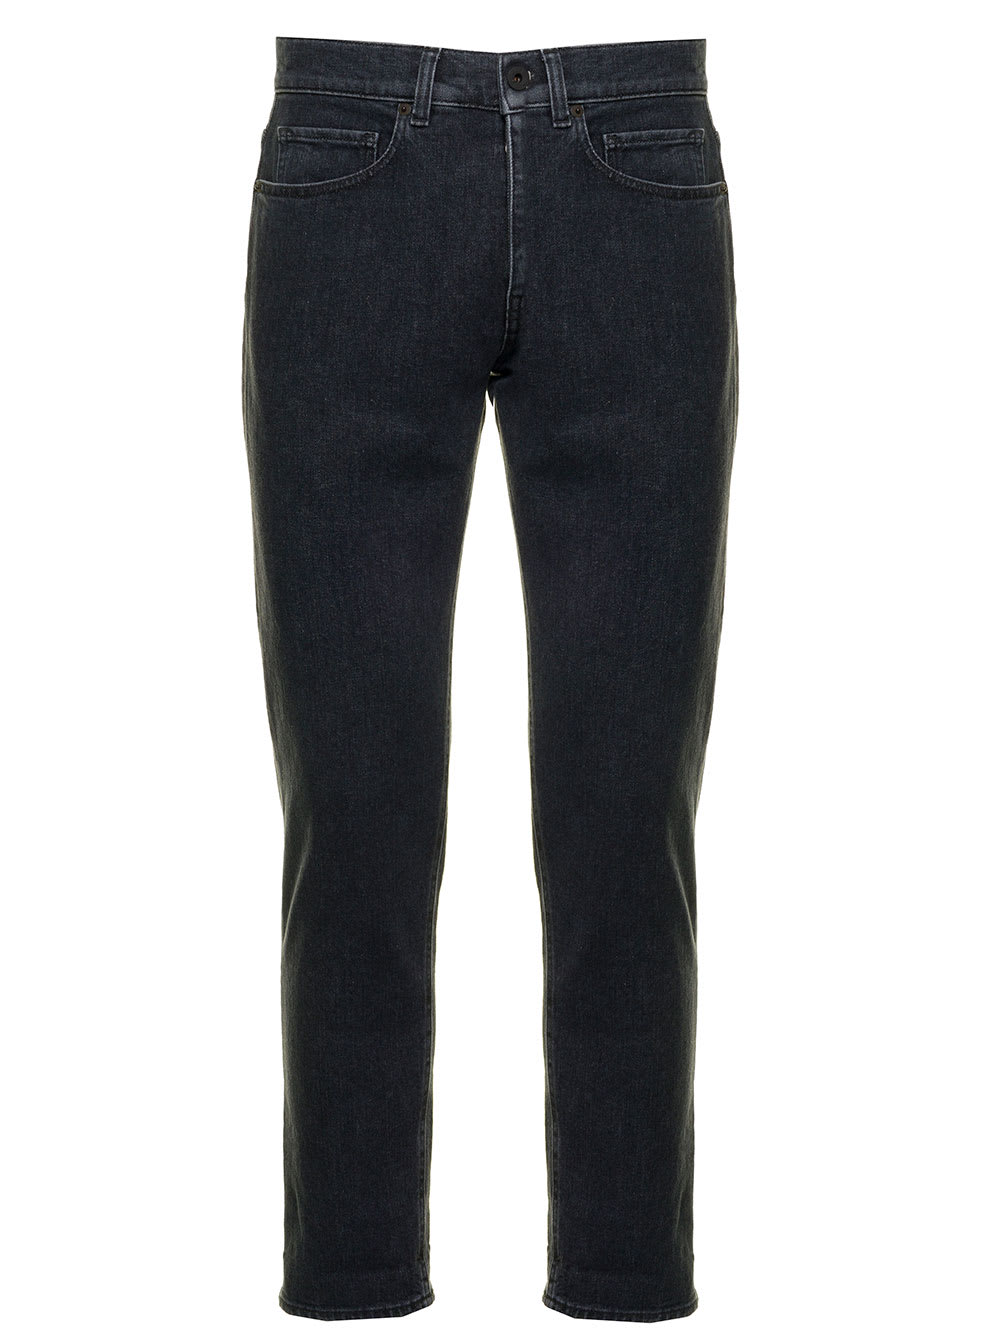 Pence 1979 Mens Grey Denim Jeans